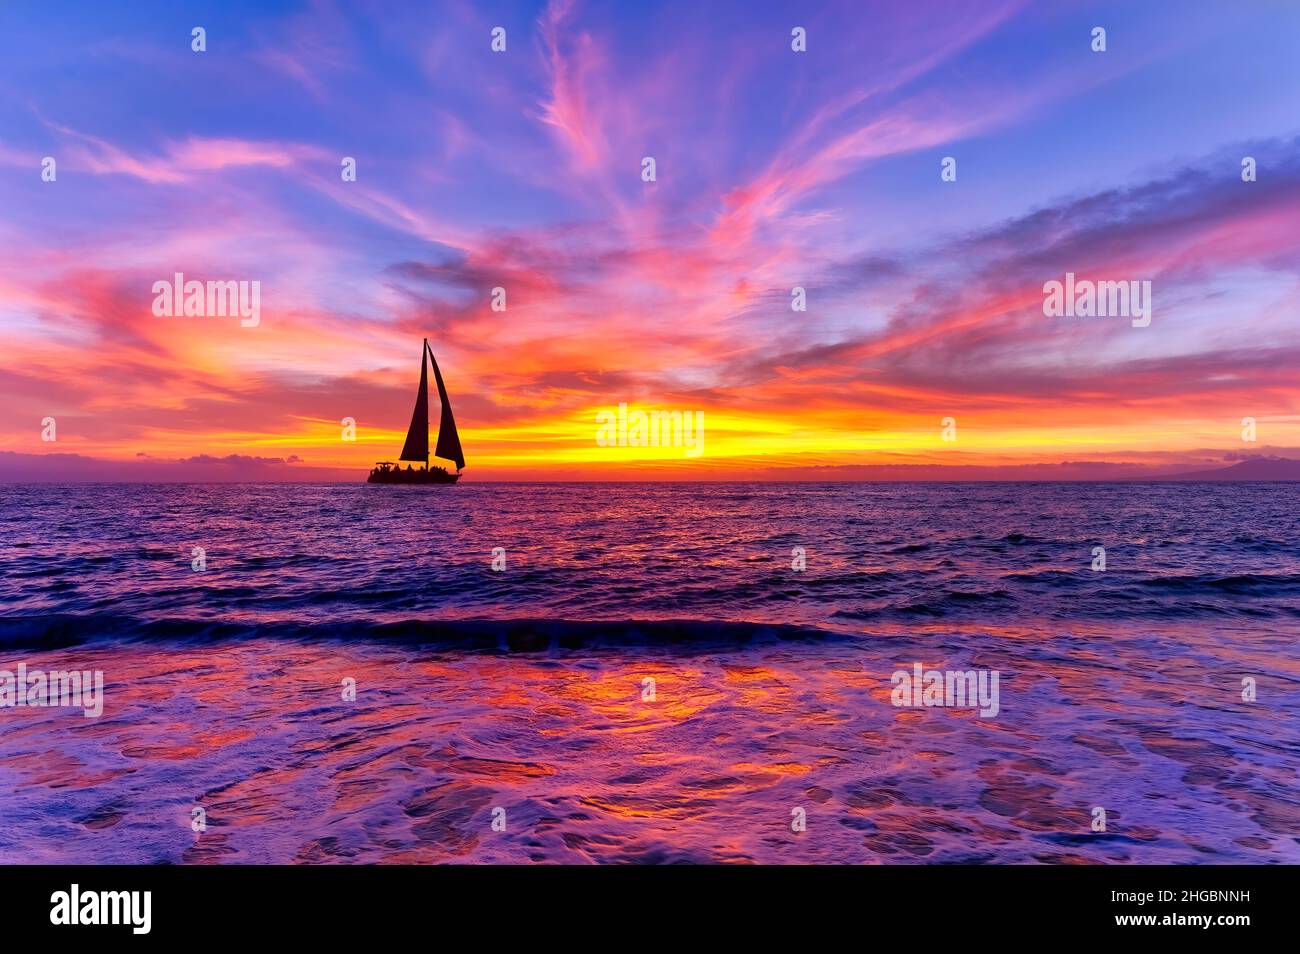 Un Voilier est la voile le long de l'océan avec Un coucher de soleil coloré sur l'océan Horizon Banque D'Images